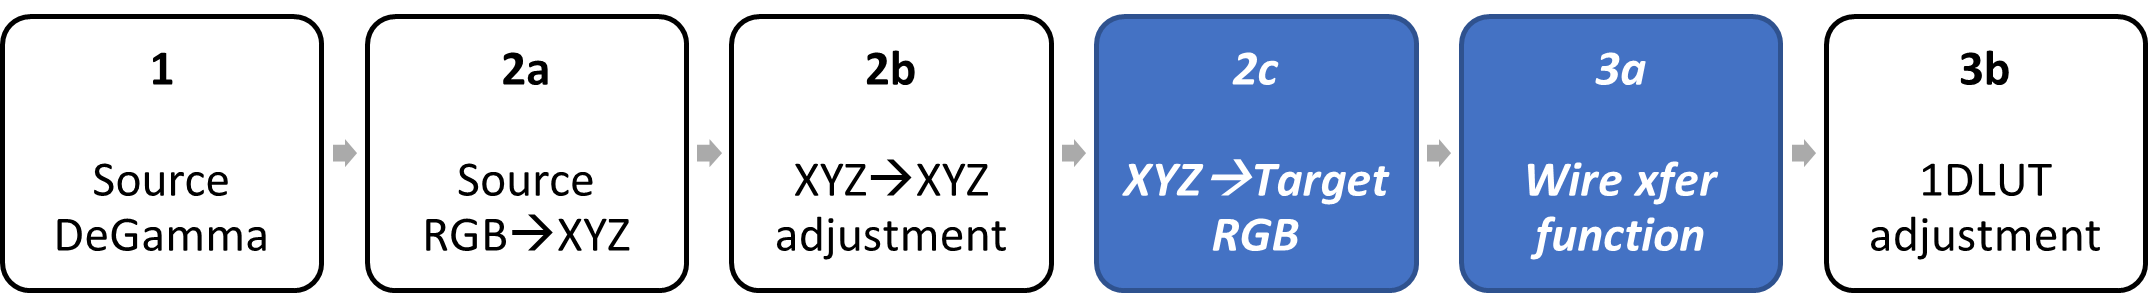 diagramme de blocs identifiant xyz pour cibler les phases de fonction rvb et de transfert de câble